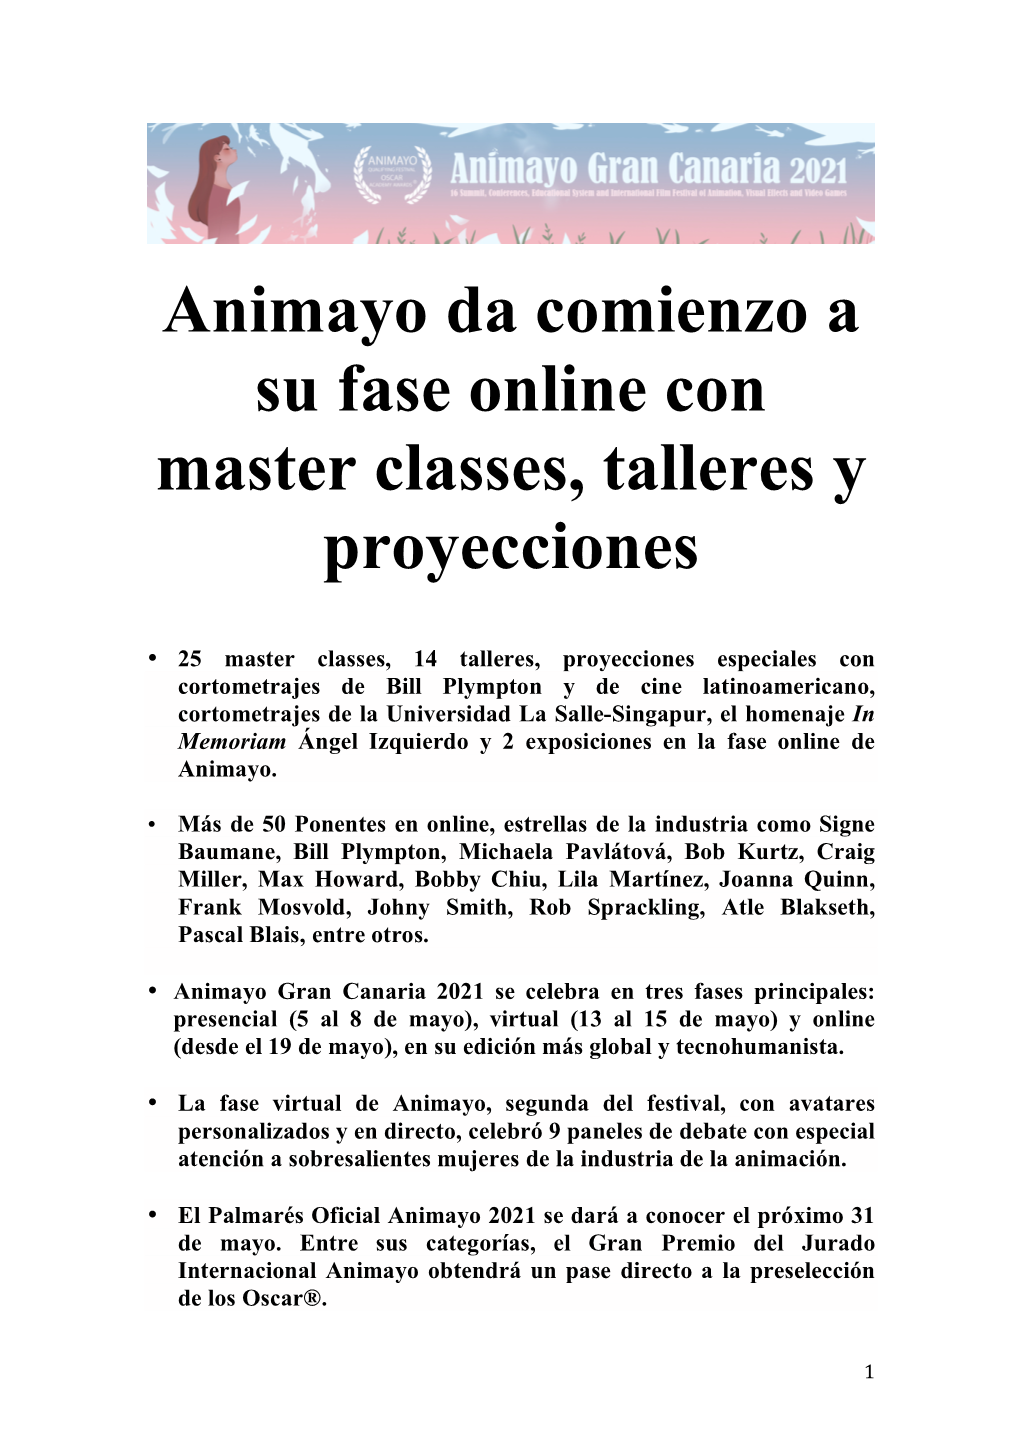 Animayo Da Comienzo a Su Fase Online Con Master Classes, Talleres Y